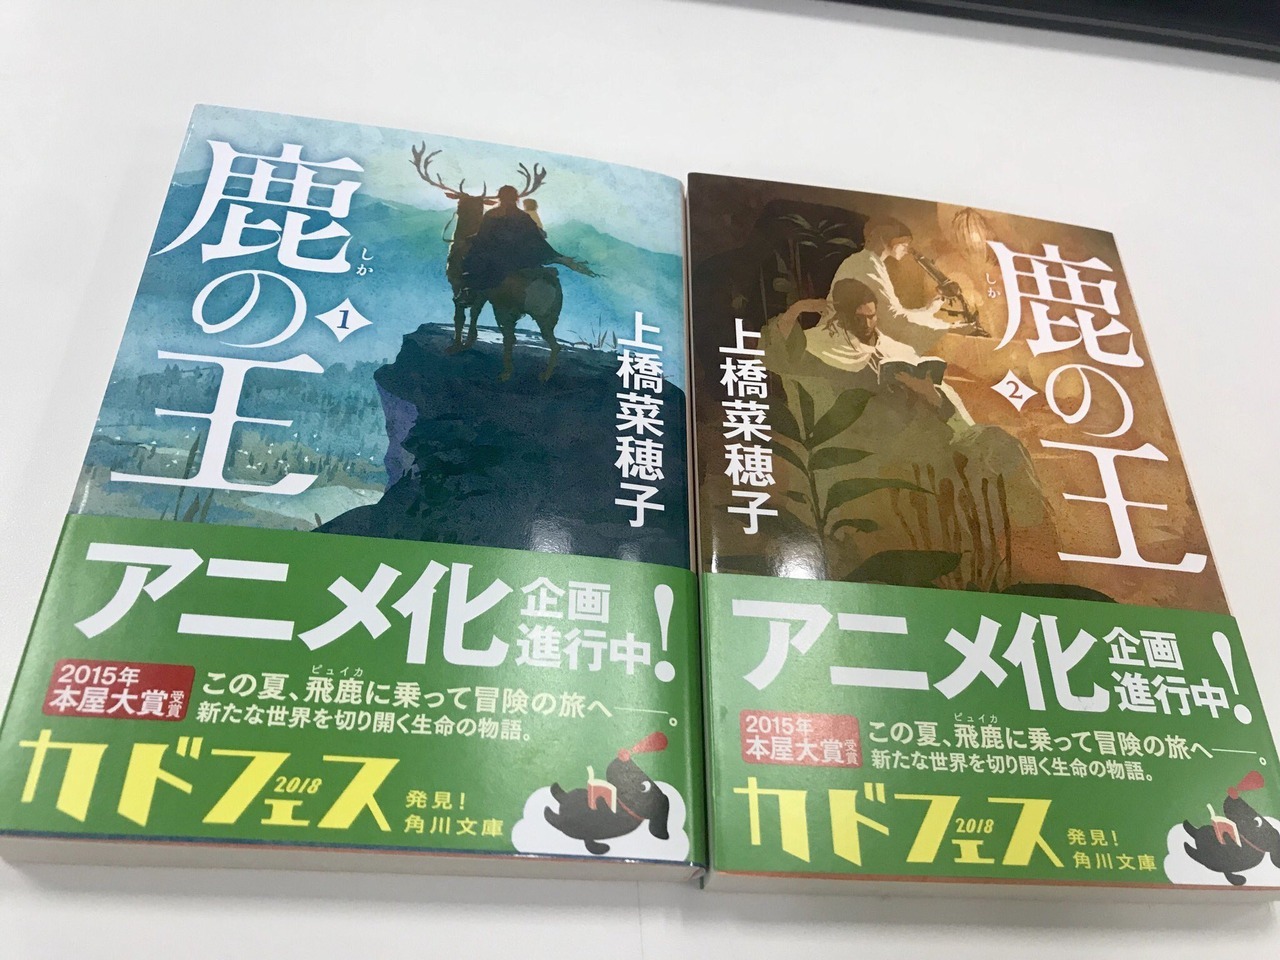 An anime adaptation of Nahoko Uehashiâs novel series, âShika no Ouâ (The Deer King) has been green-lit.